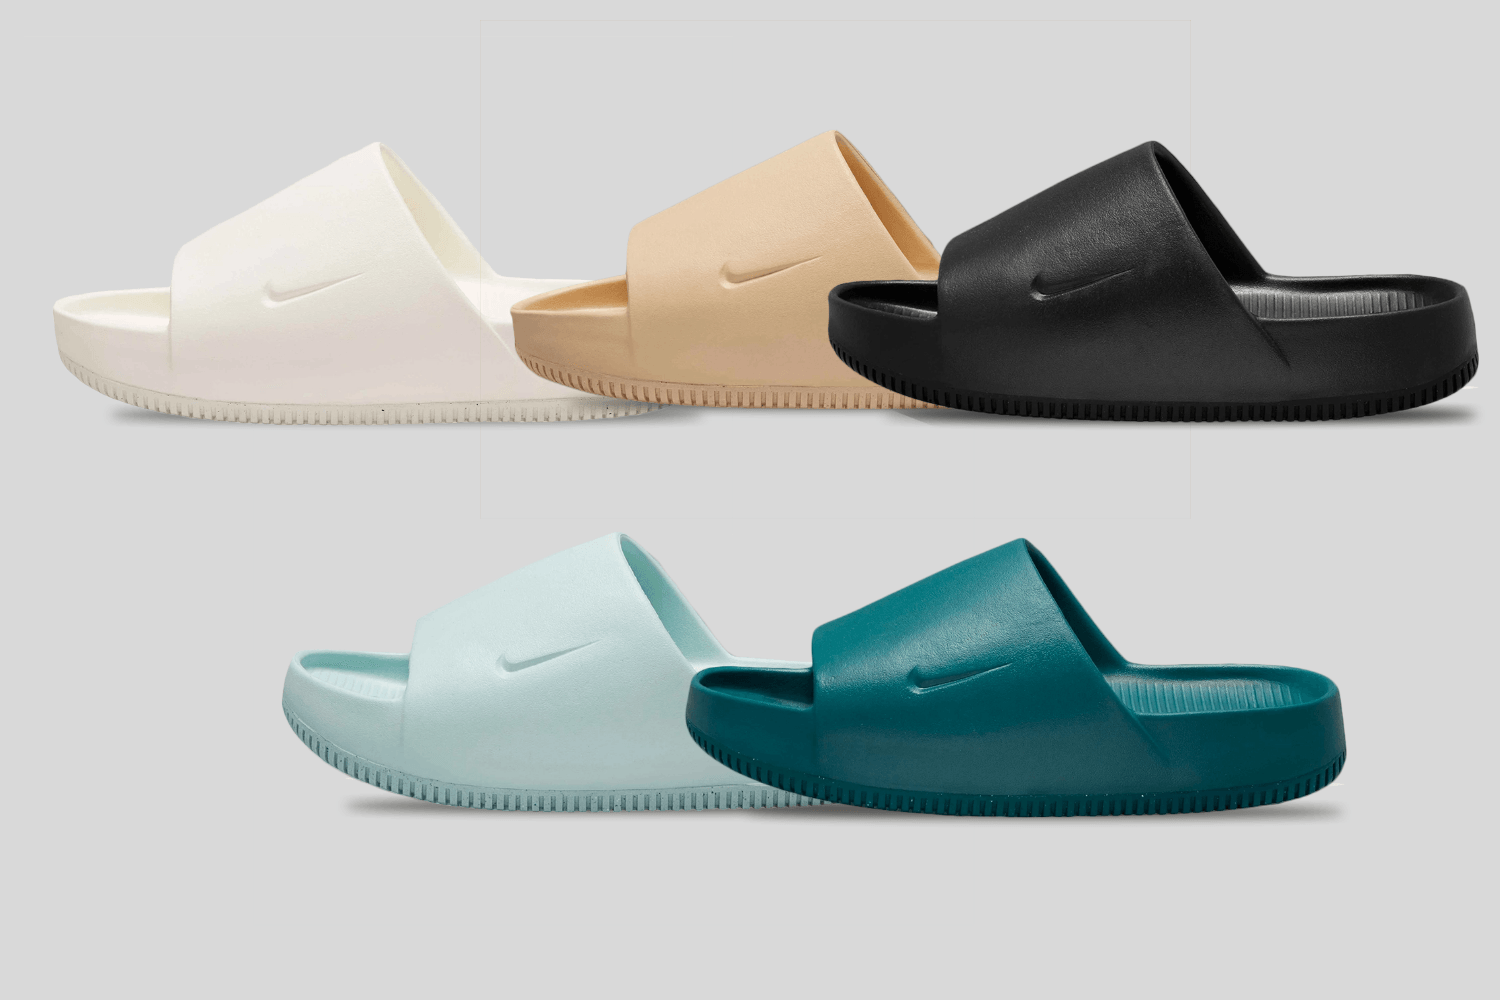 Nike brengt de nieuwe Calm Slides uit met een chunky design